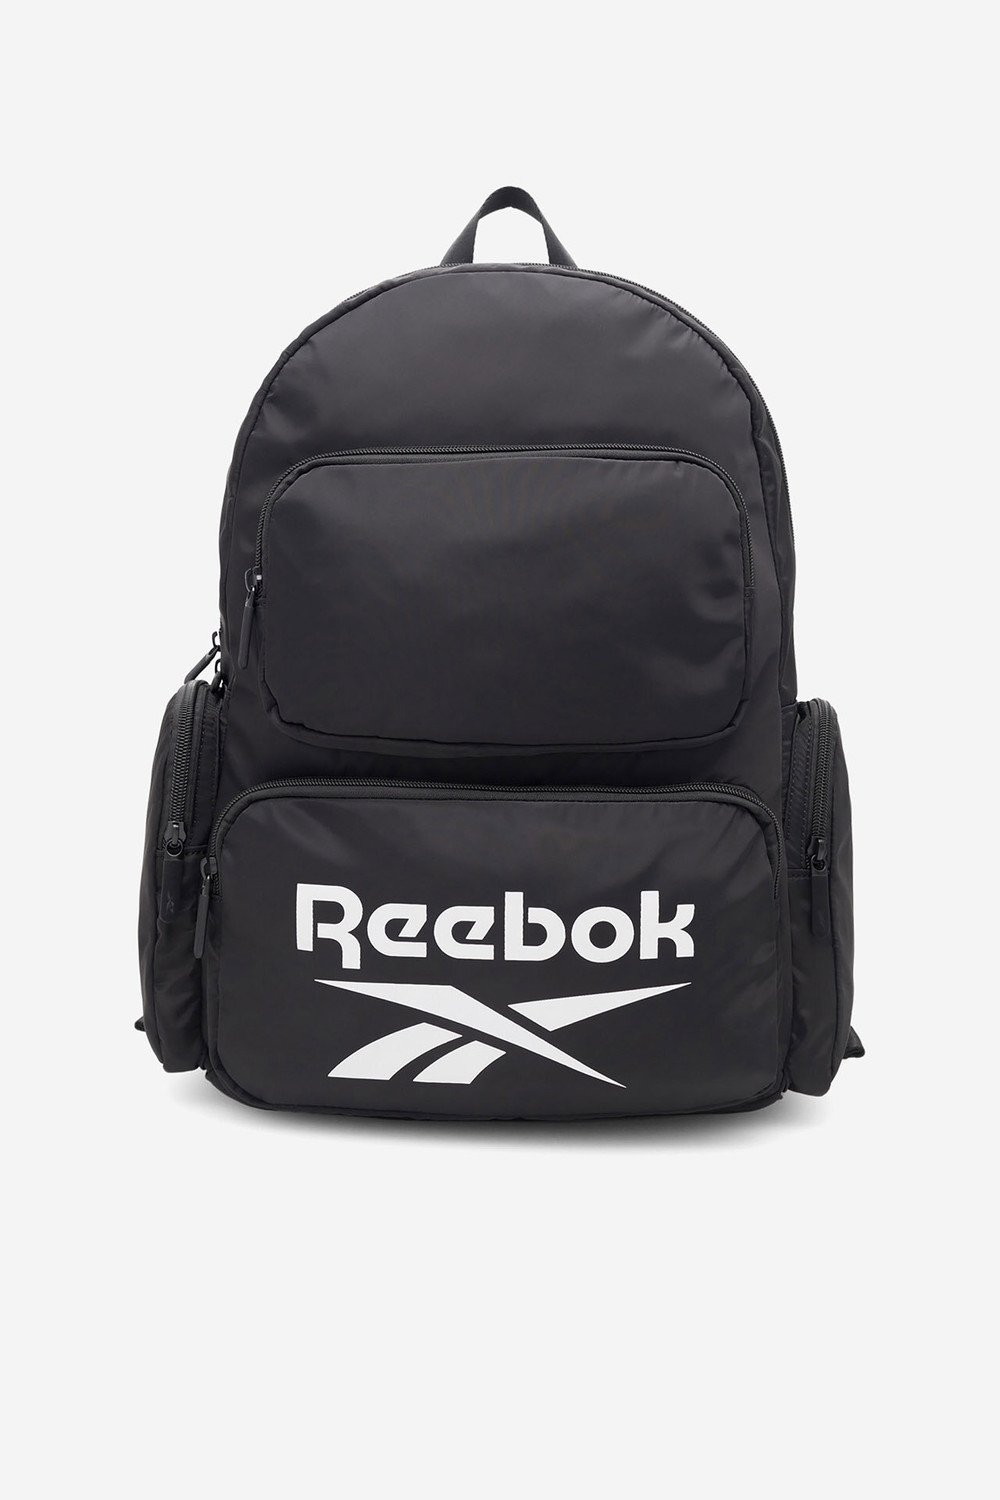 Batohy a tašky Reebok RBK-P-022-CCC